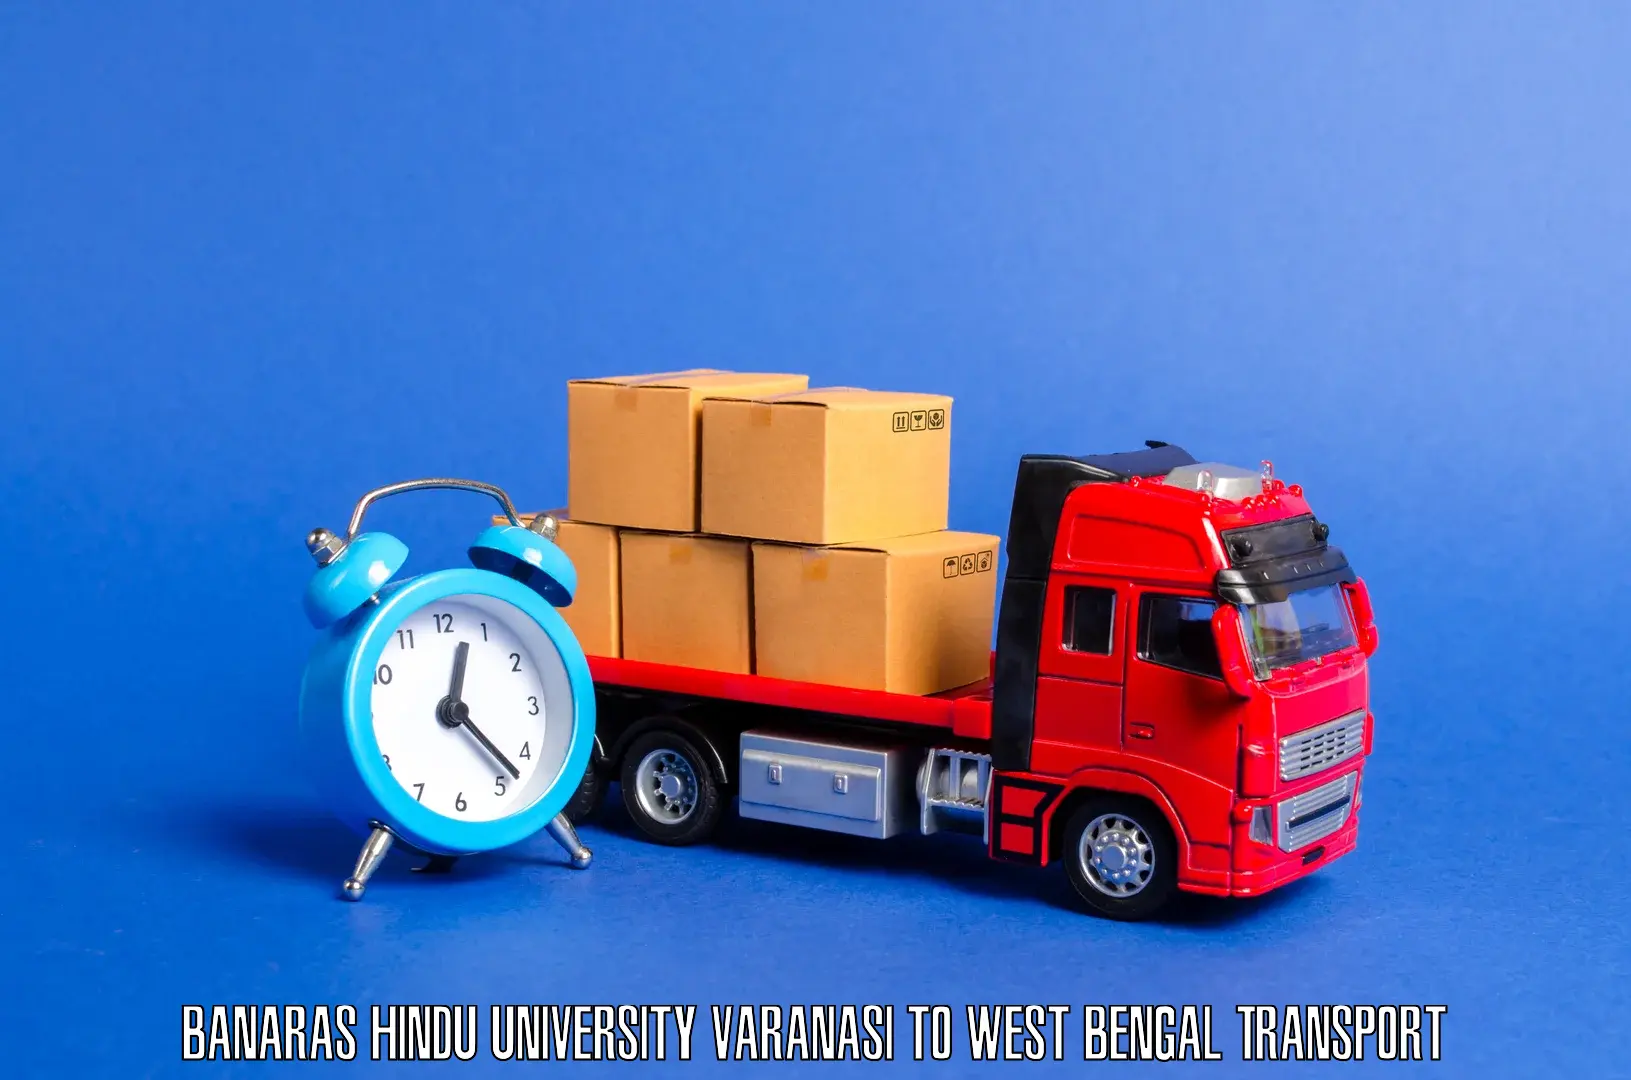 Furniture transport service in Banaras Hindu University Varanasi to Bolpur